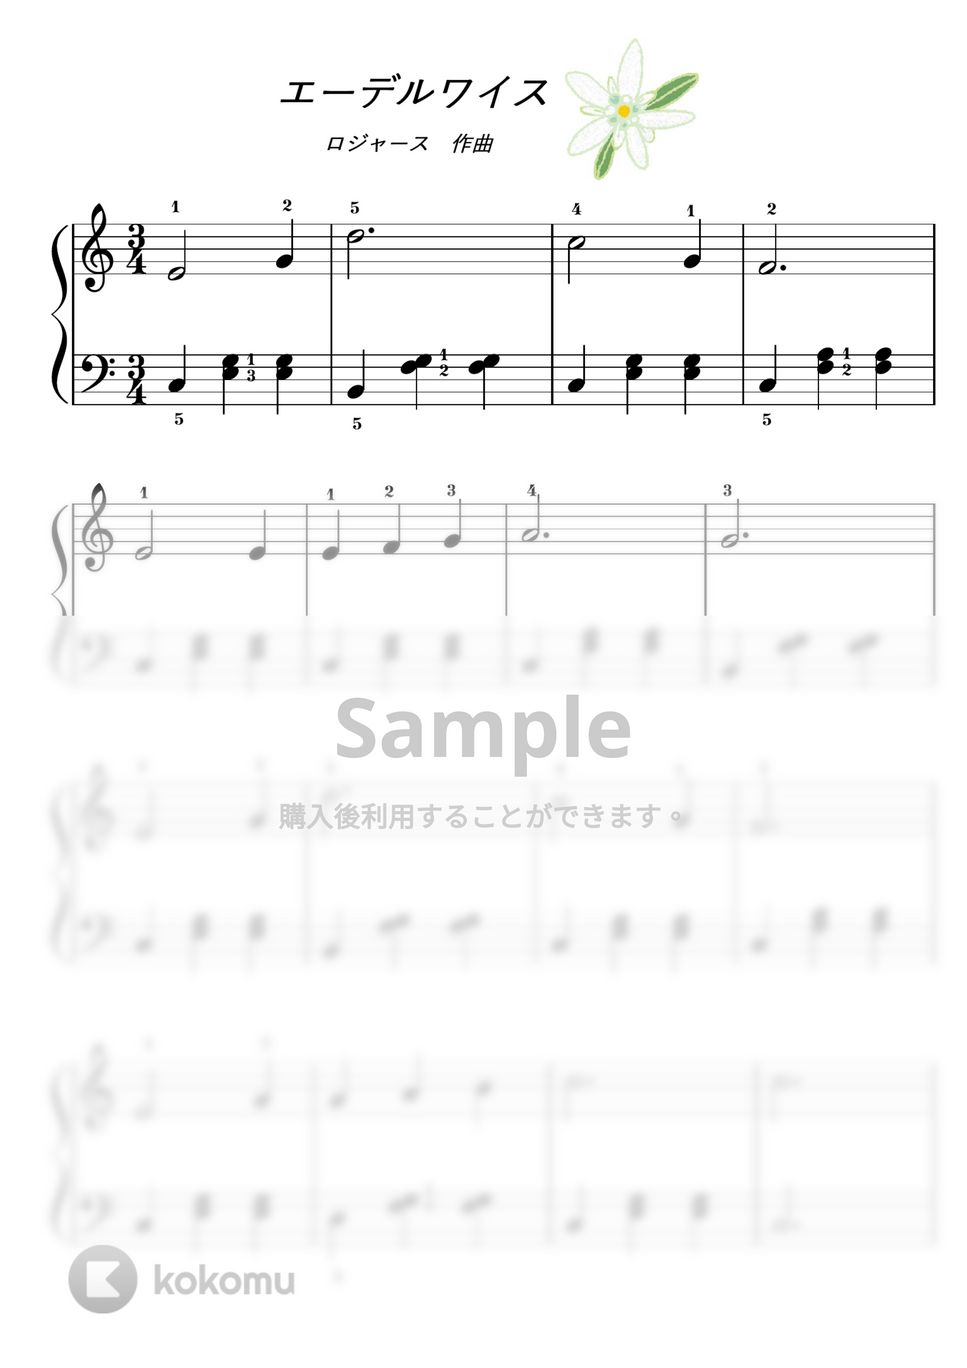 サウンドオブミュージック - 【初級】エーデルワイス by ピアノのせんせいの楽譜集